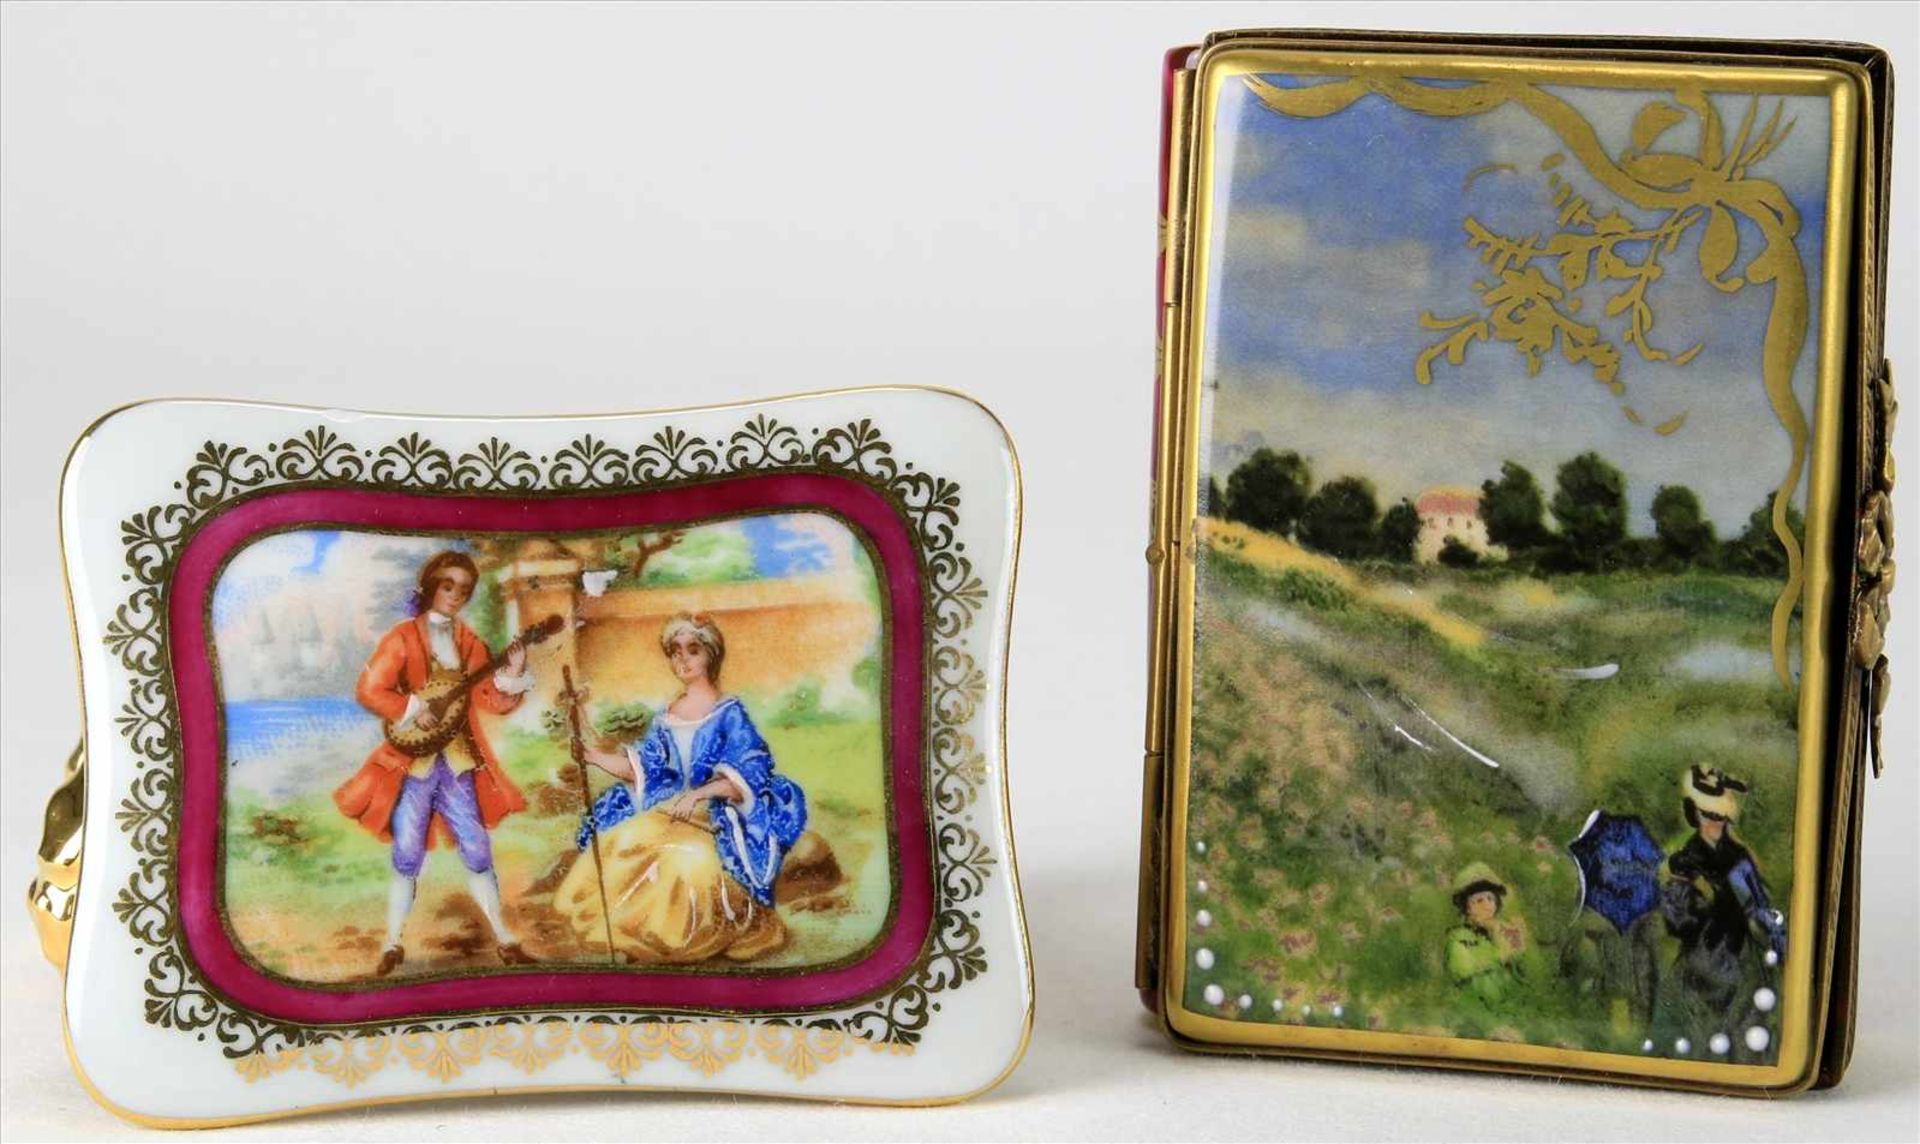 Zwei ZierdöschchenLimoges 20. Jh. Porzellan mit Goldstaffage und gemaltem bzw. Druckdekor. Gedruckte